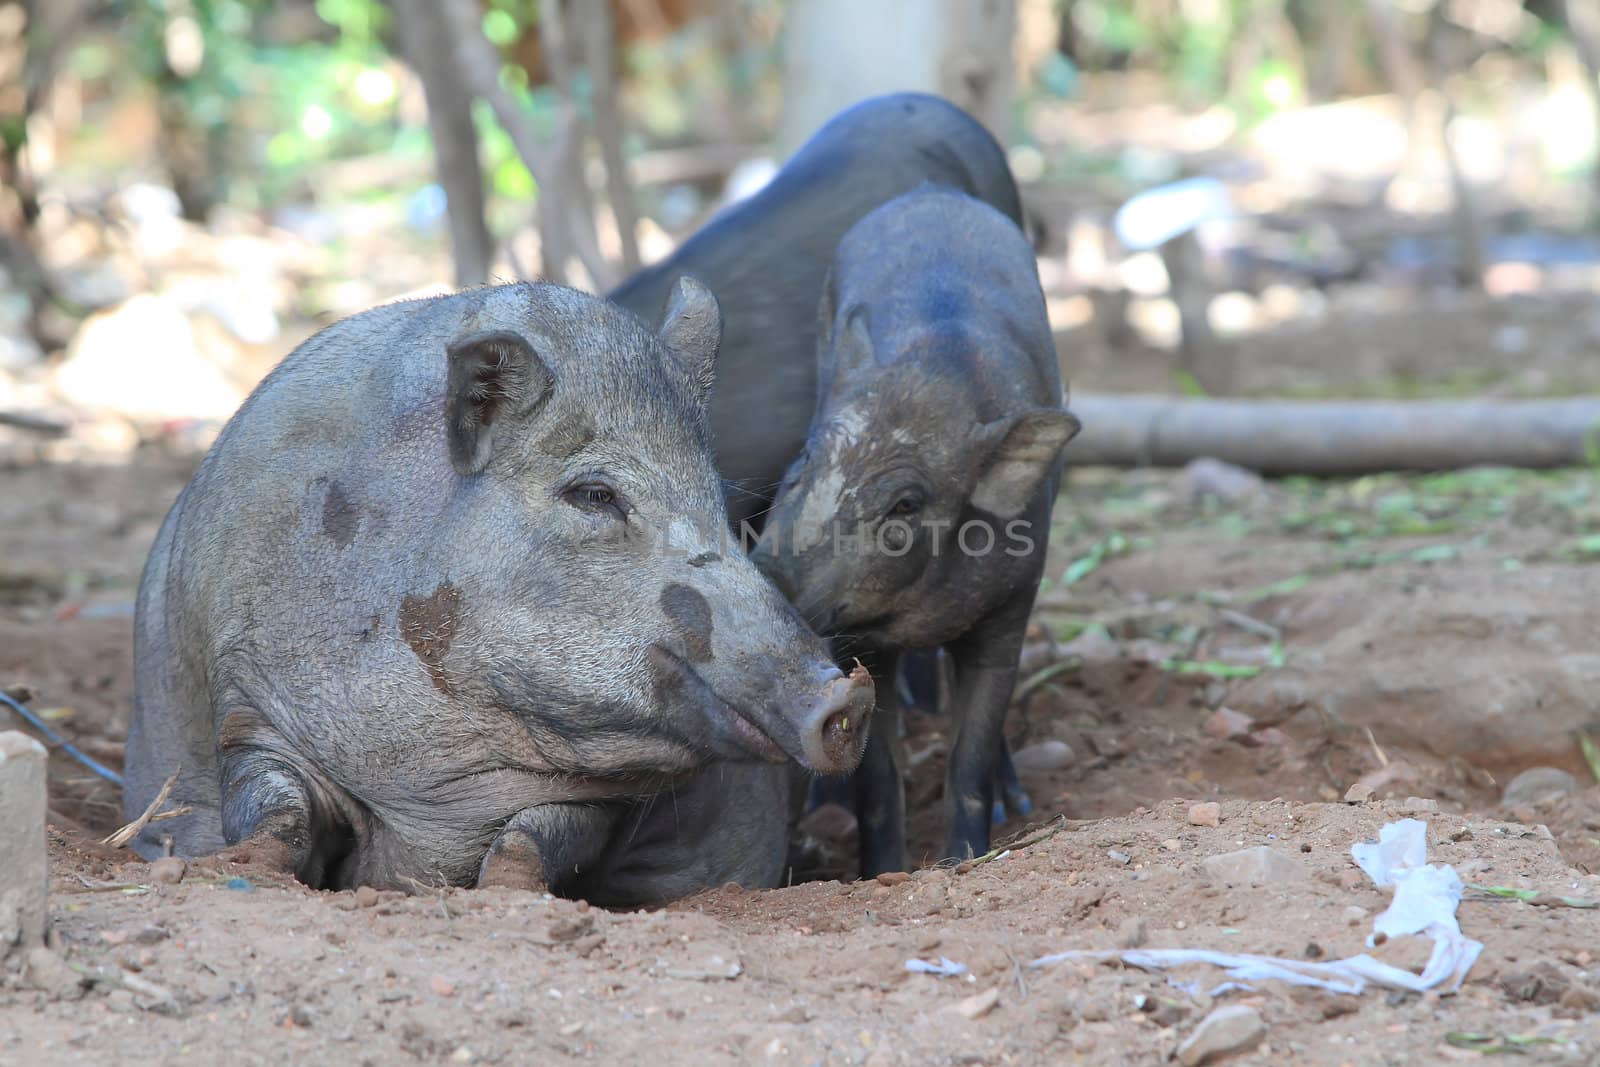 Wild boar feeding in mud